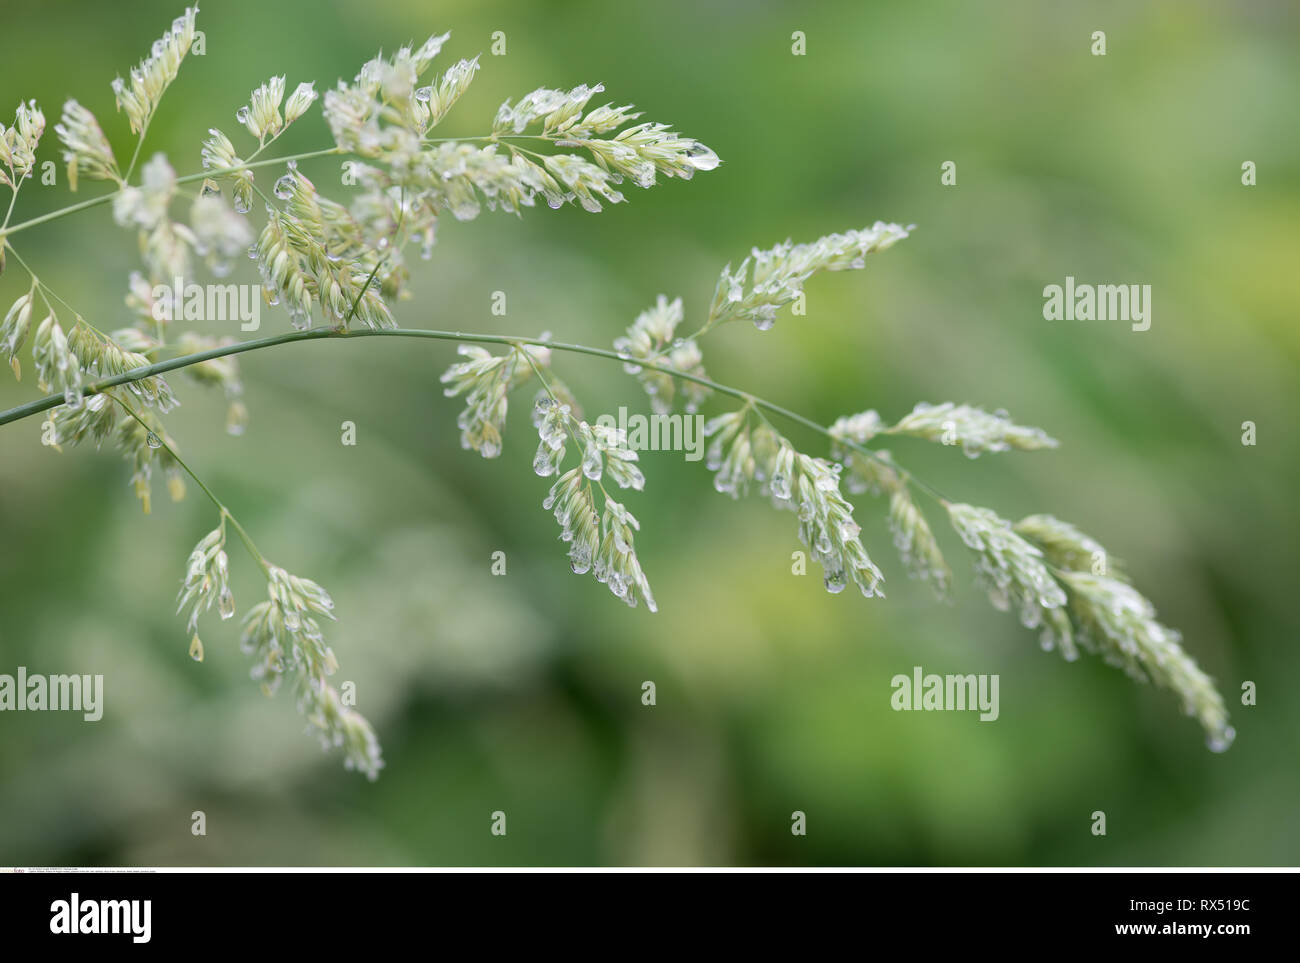 La botanica, erbe sotto la pioggia, attenzione! Per Greetingcard-Use / Postcard-Use nei Paesi di lingua tedesca talune restrizioni possono applicare Foto Stock